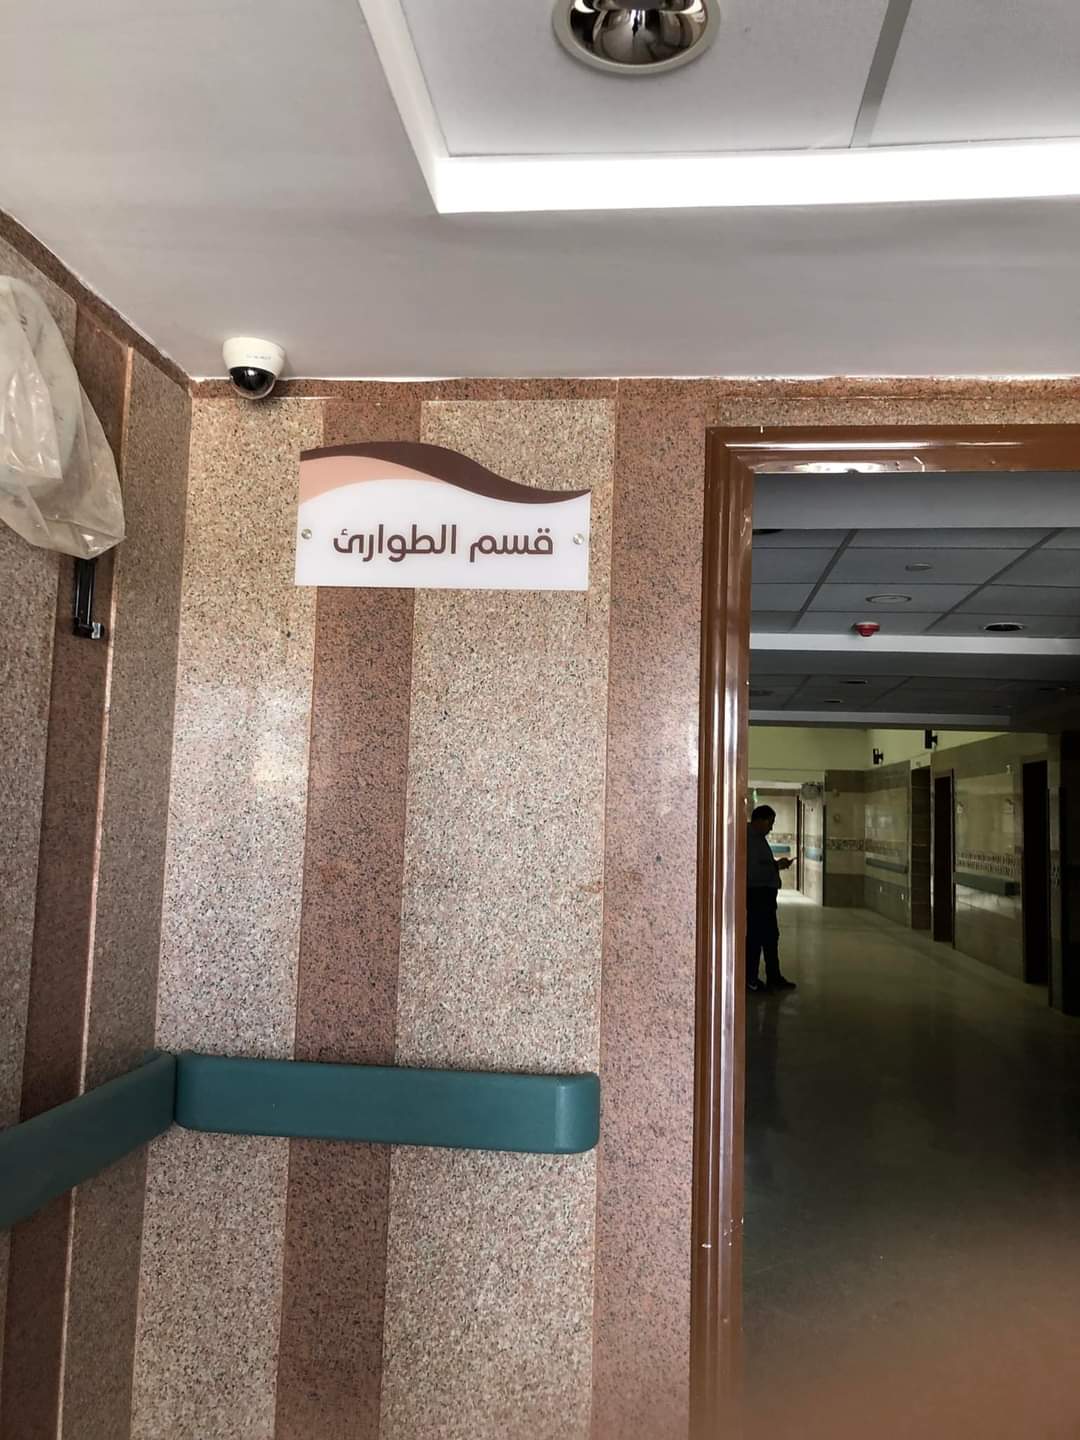 جولة داخل مستشفى محلة مرحوم (2)